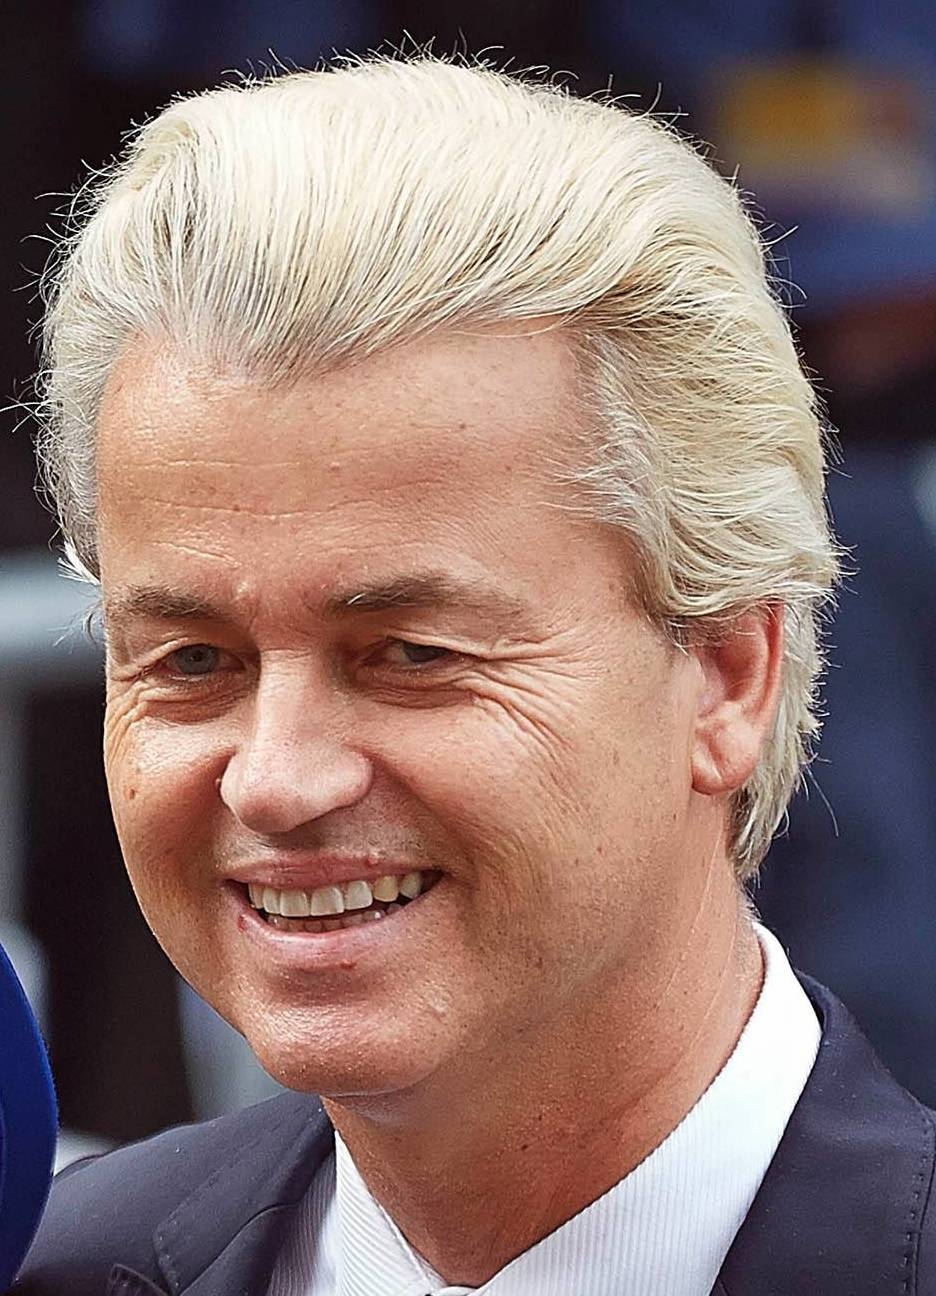 auteur Geert Wilders de la citation Le plus grand problème de l'Europe est le relativisme culturel. Cela a conduit à une situation où les Européens ne savent plus de quoi ils devraient être fiers et qui ils sont vraiment parce qu'un concept soi-disant libéral et de gauche dit que toutes les cultures sont les mêmes.